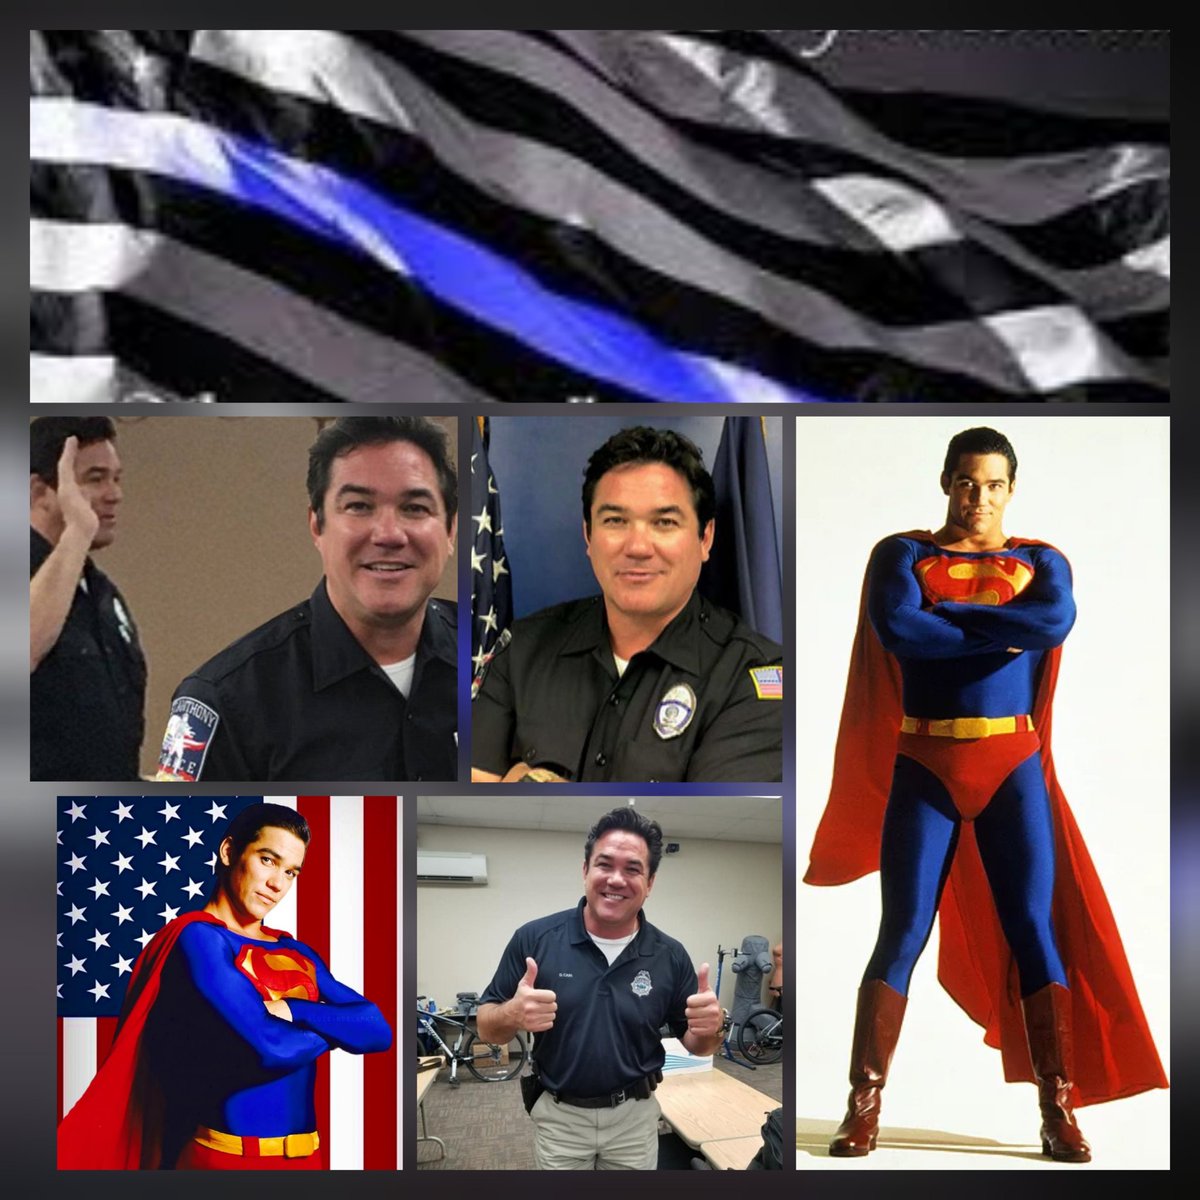 Happy #NationalSuperheroDay
#Superman #TrueHero @RealDeanCain 🇺🇸 🙏